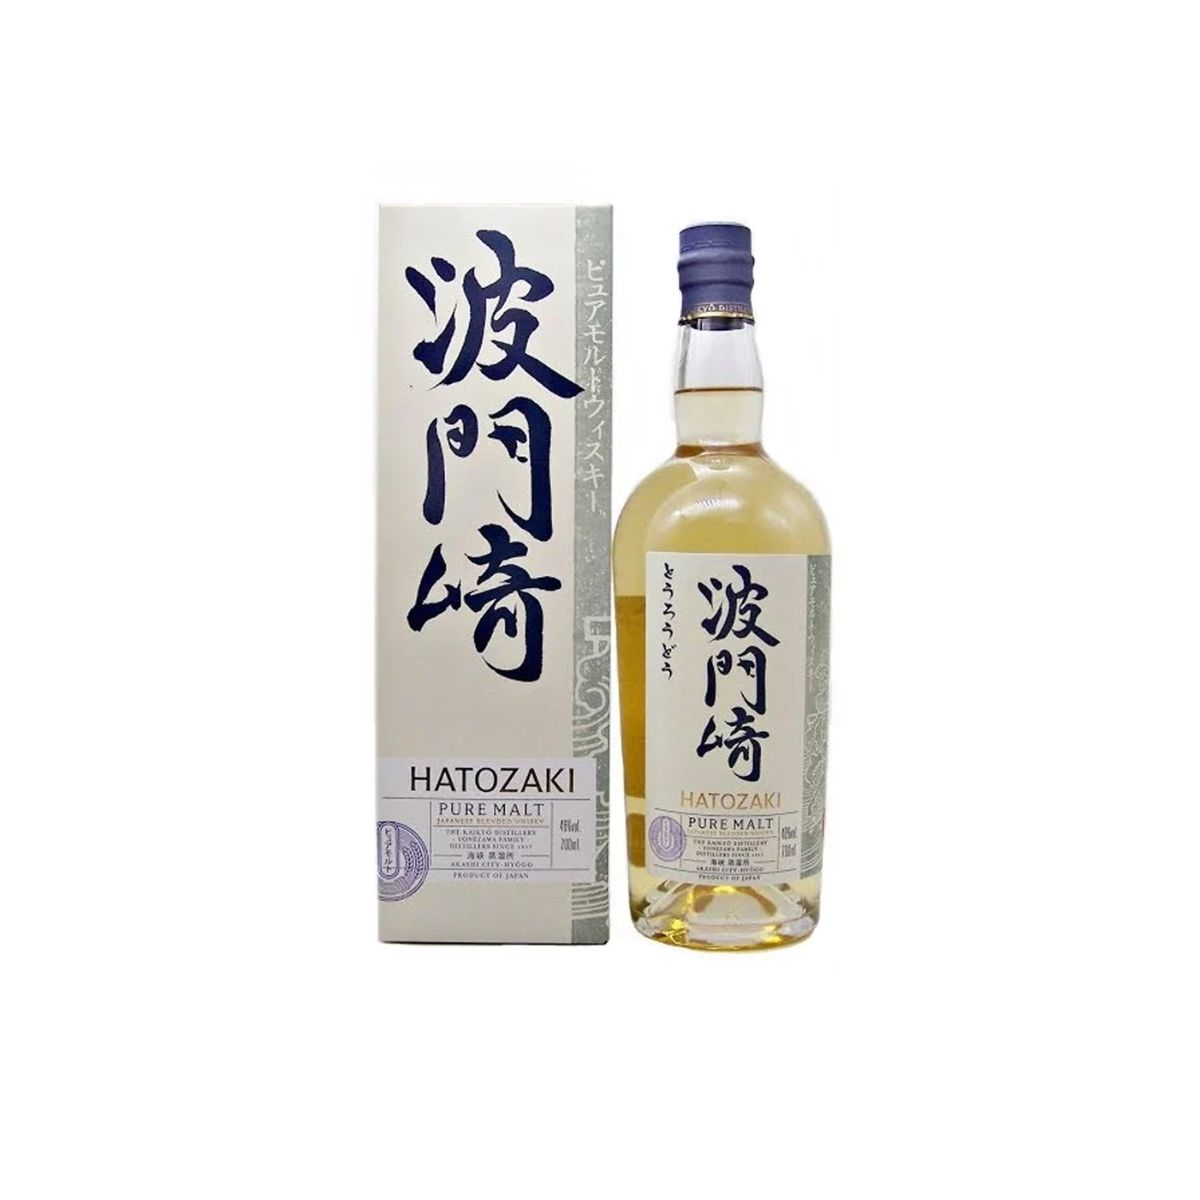 Hatozaki NV Whisky Malt Pure